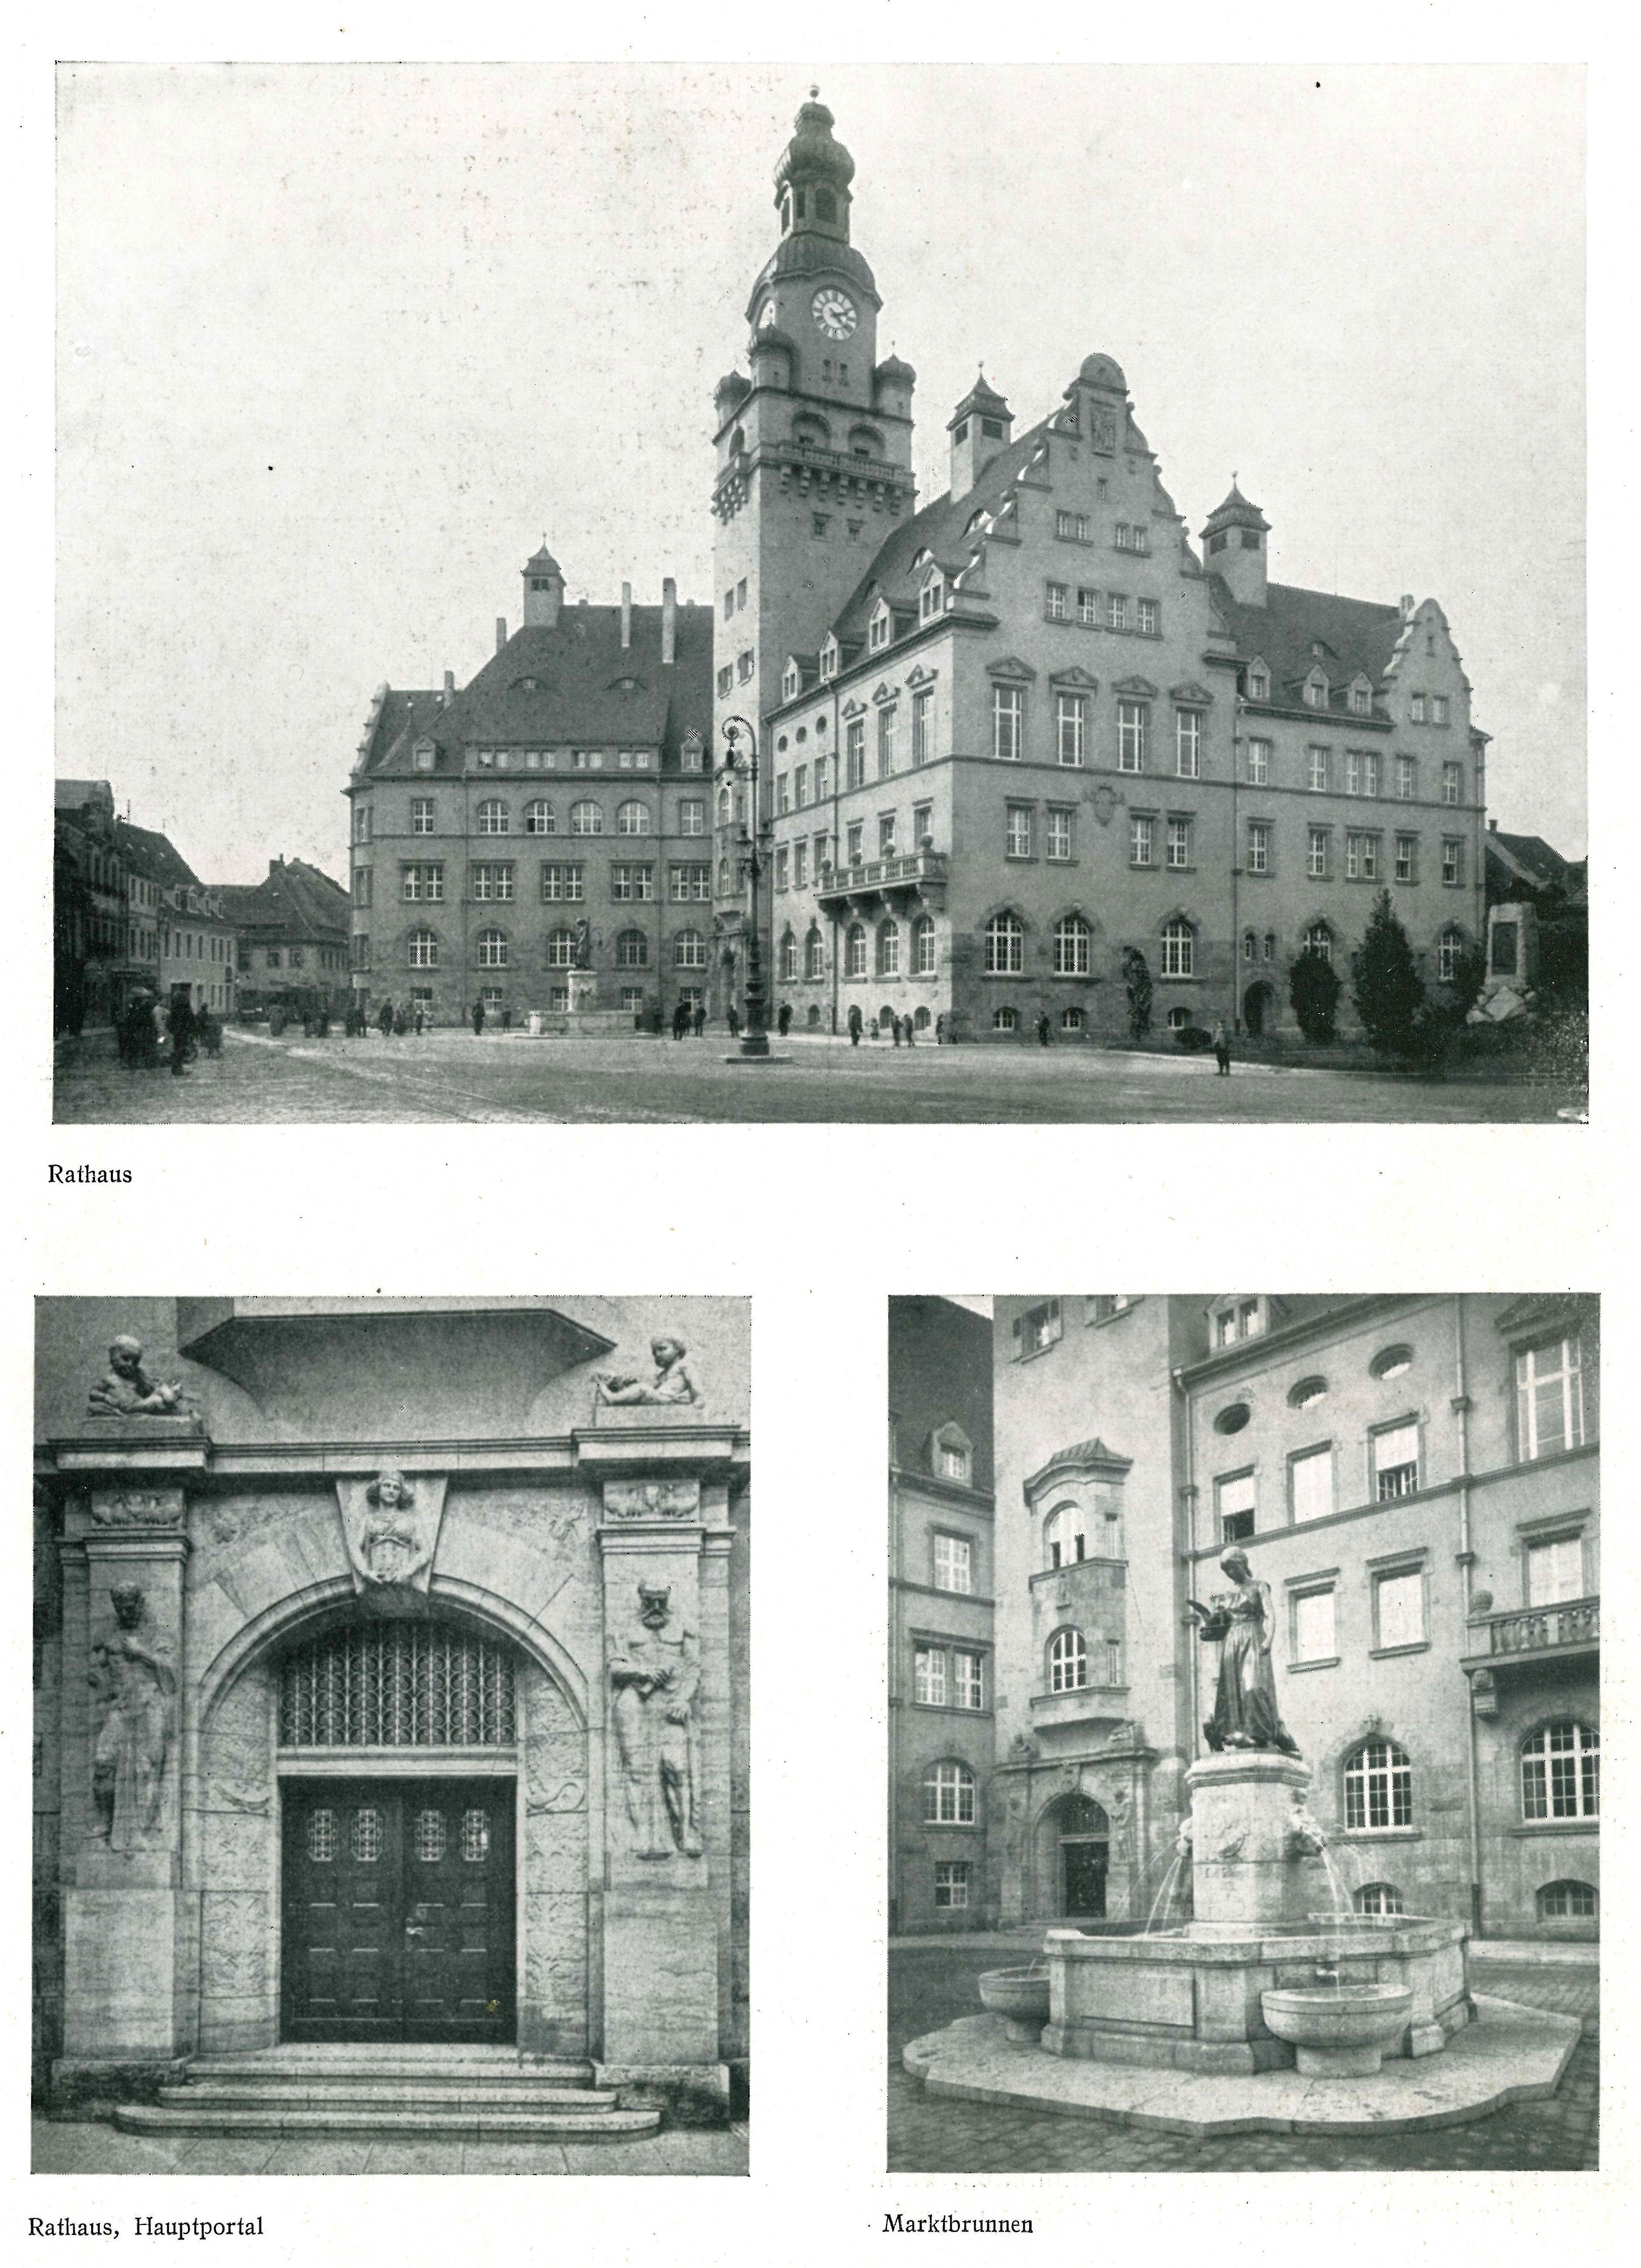 Rathaus Dari 1925 S.20